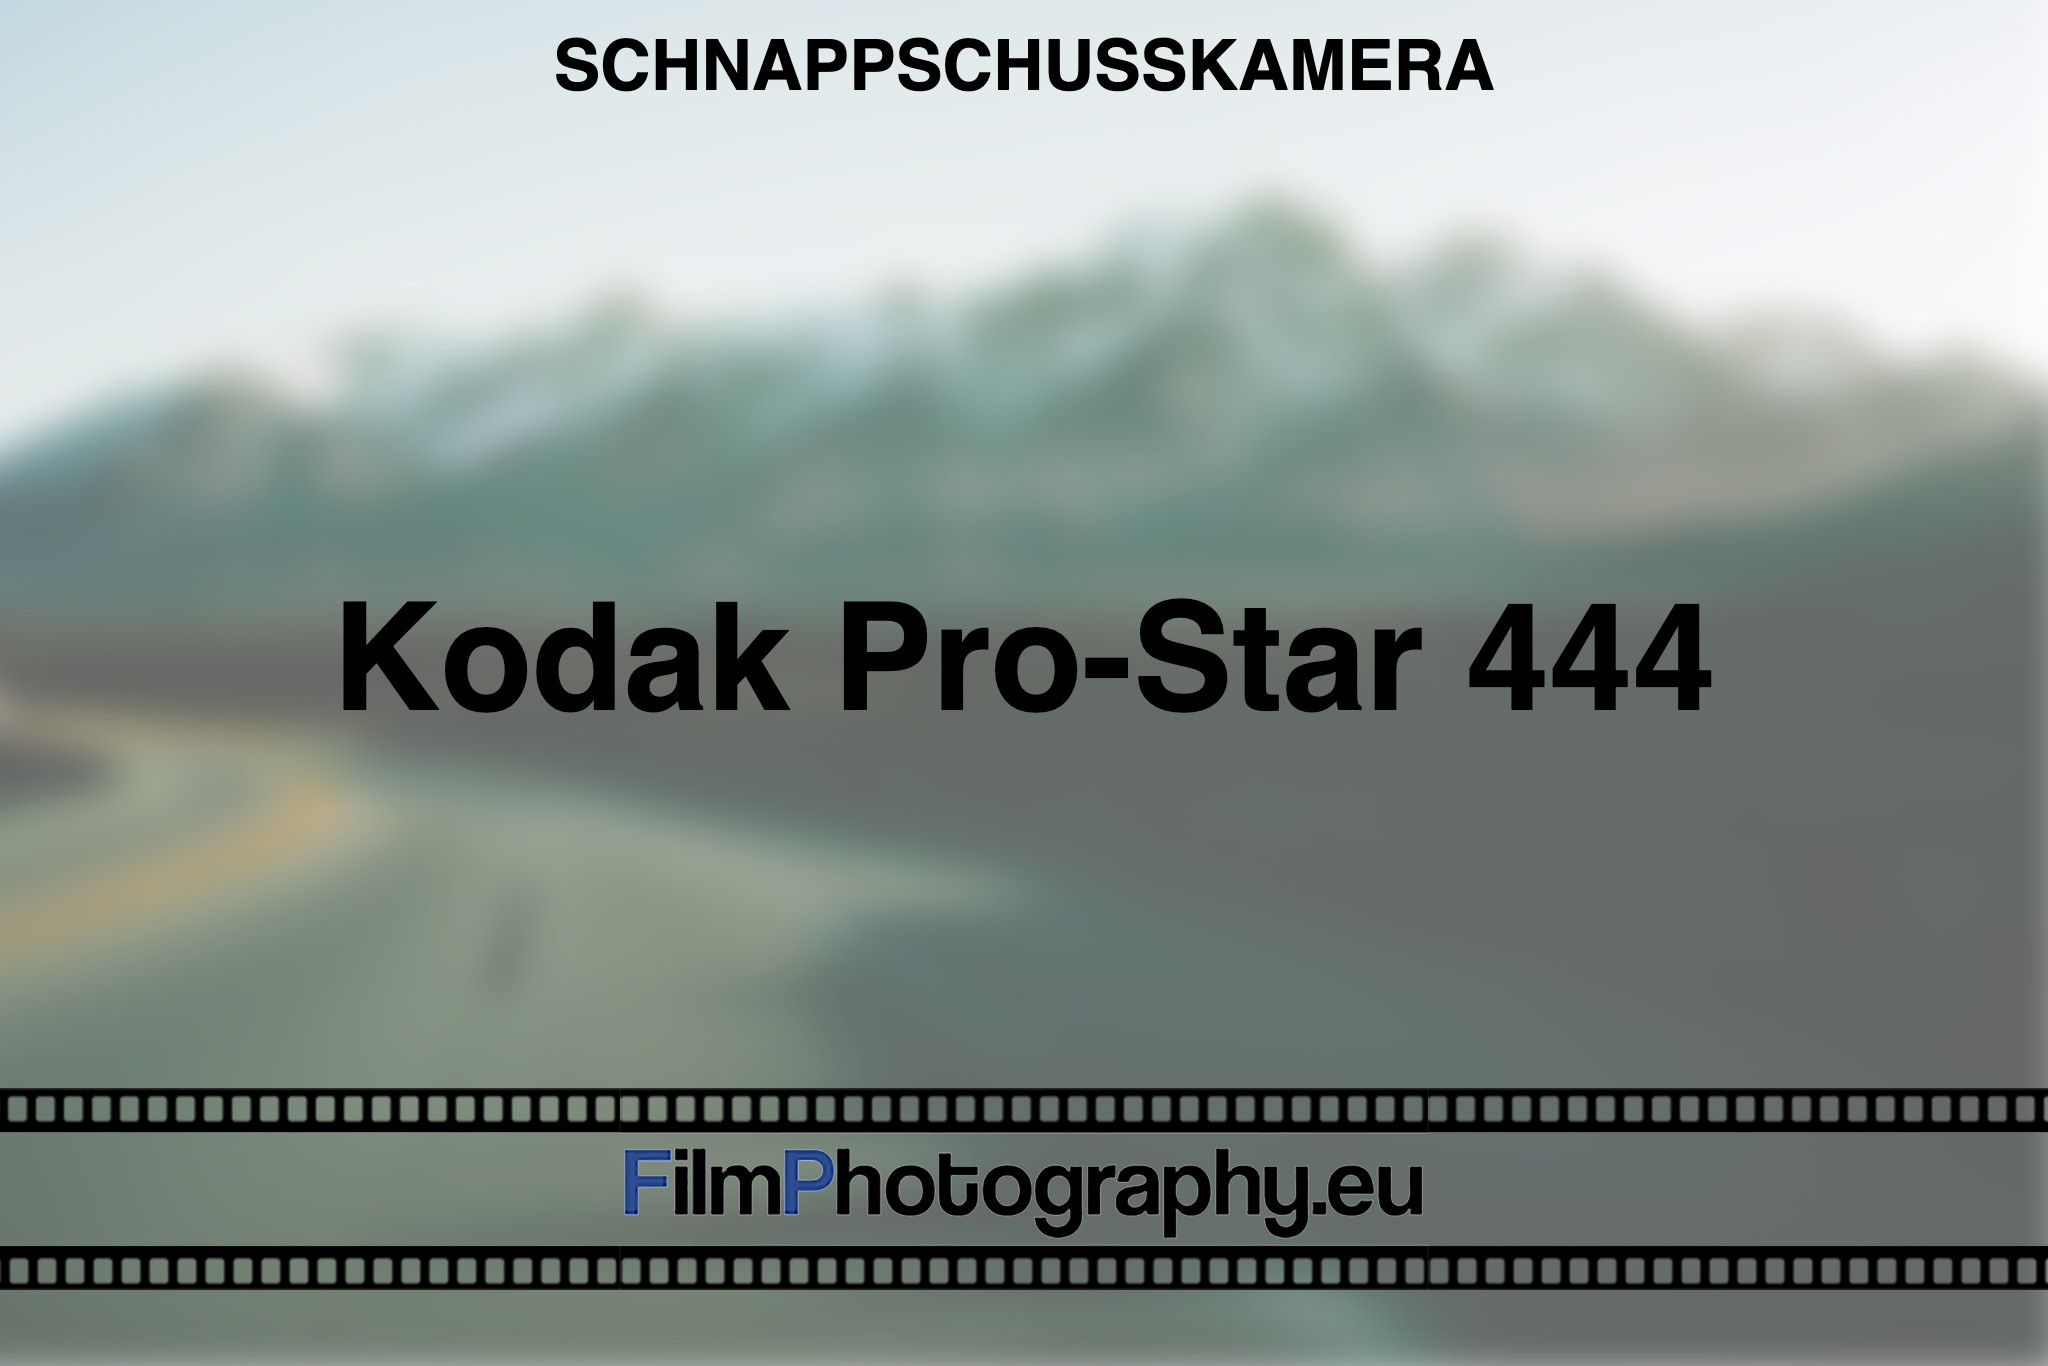 kodak-pro-star-444-schnappschusskamera-bnv